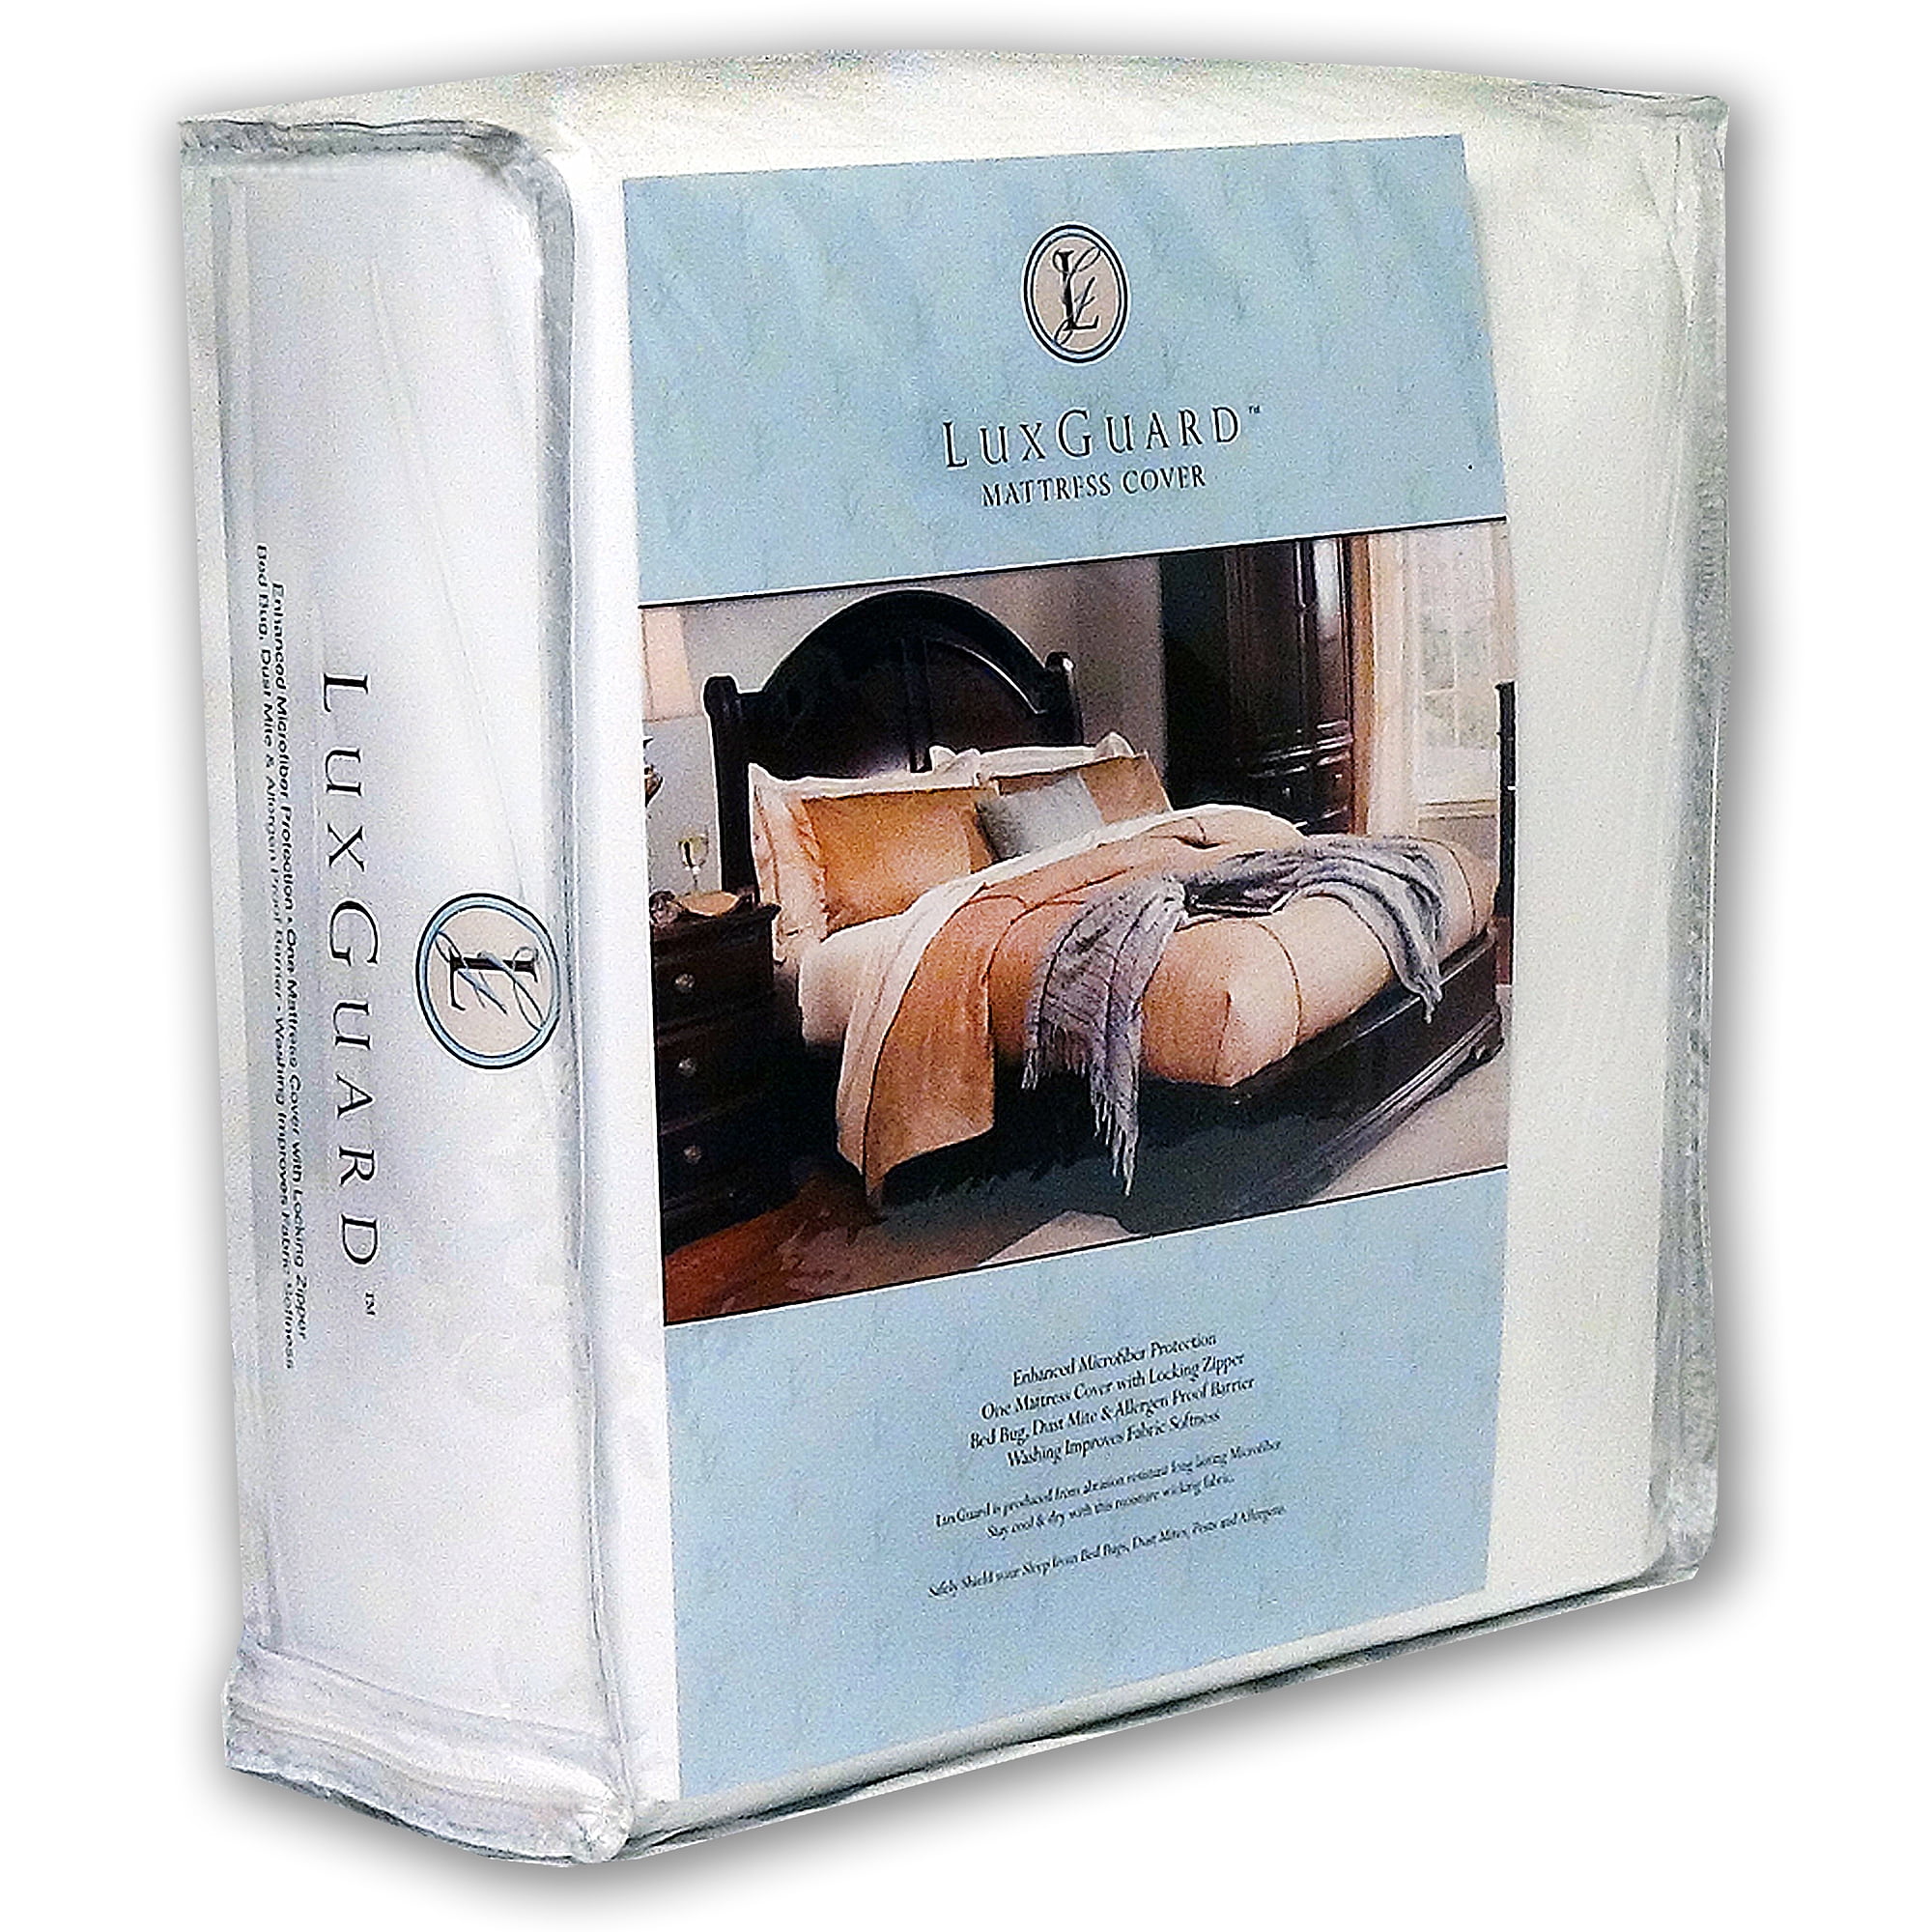 Full 9" Sleep Safe EVOLON Dust Mite Bed Bug Allergy Mattress Encasement Cover 